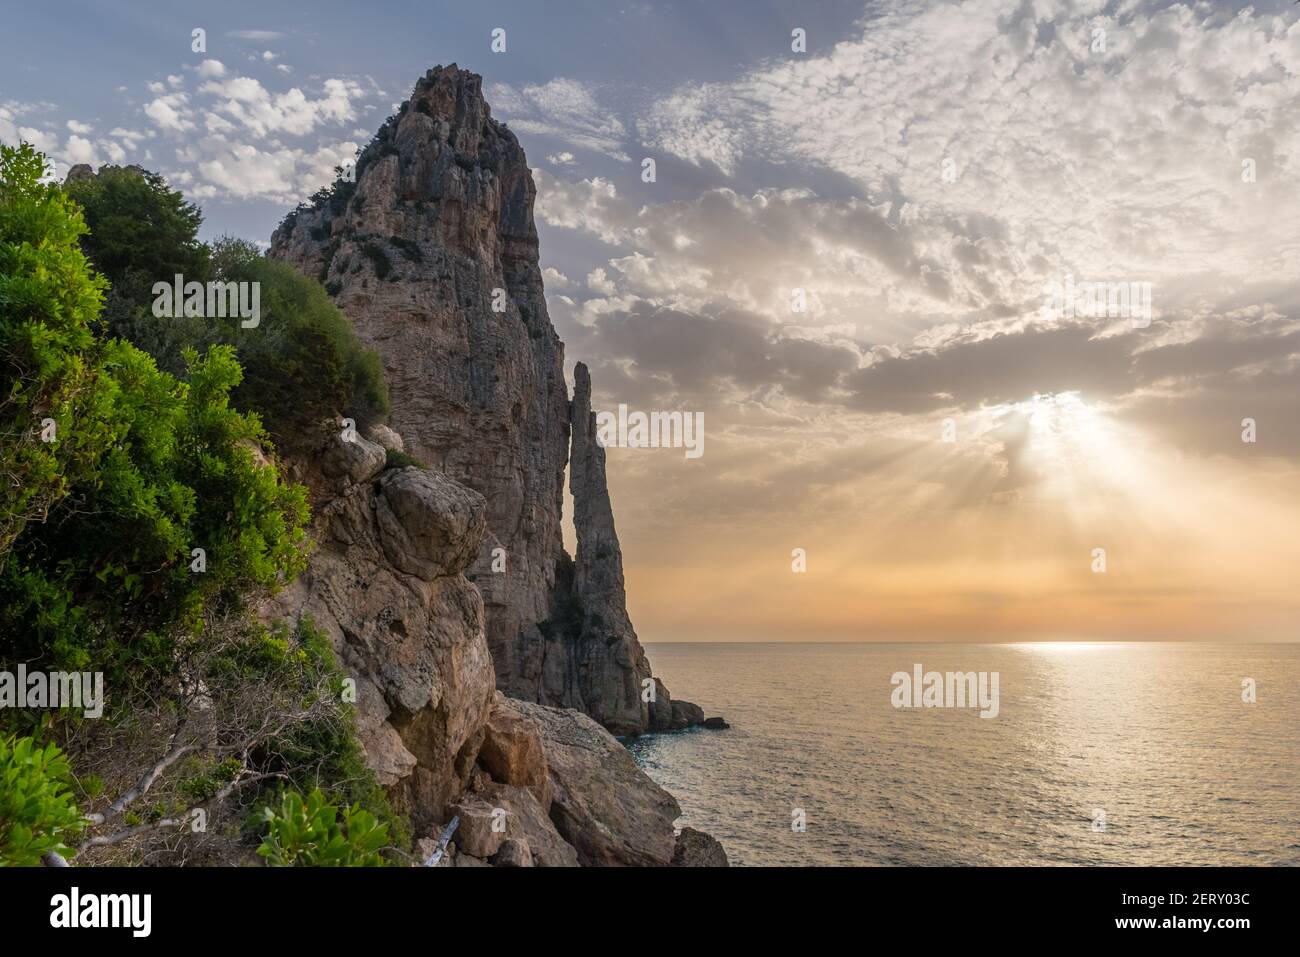 Felsenstein-Gipfel "Pedra Longa" im Golf von Orosei in der Nähe von Santa Maria Navarrese, kleines Dorf am Meer in Ogliastra (Sardinien, Italien) Stockfoto